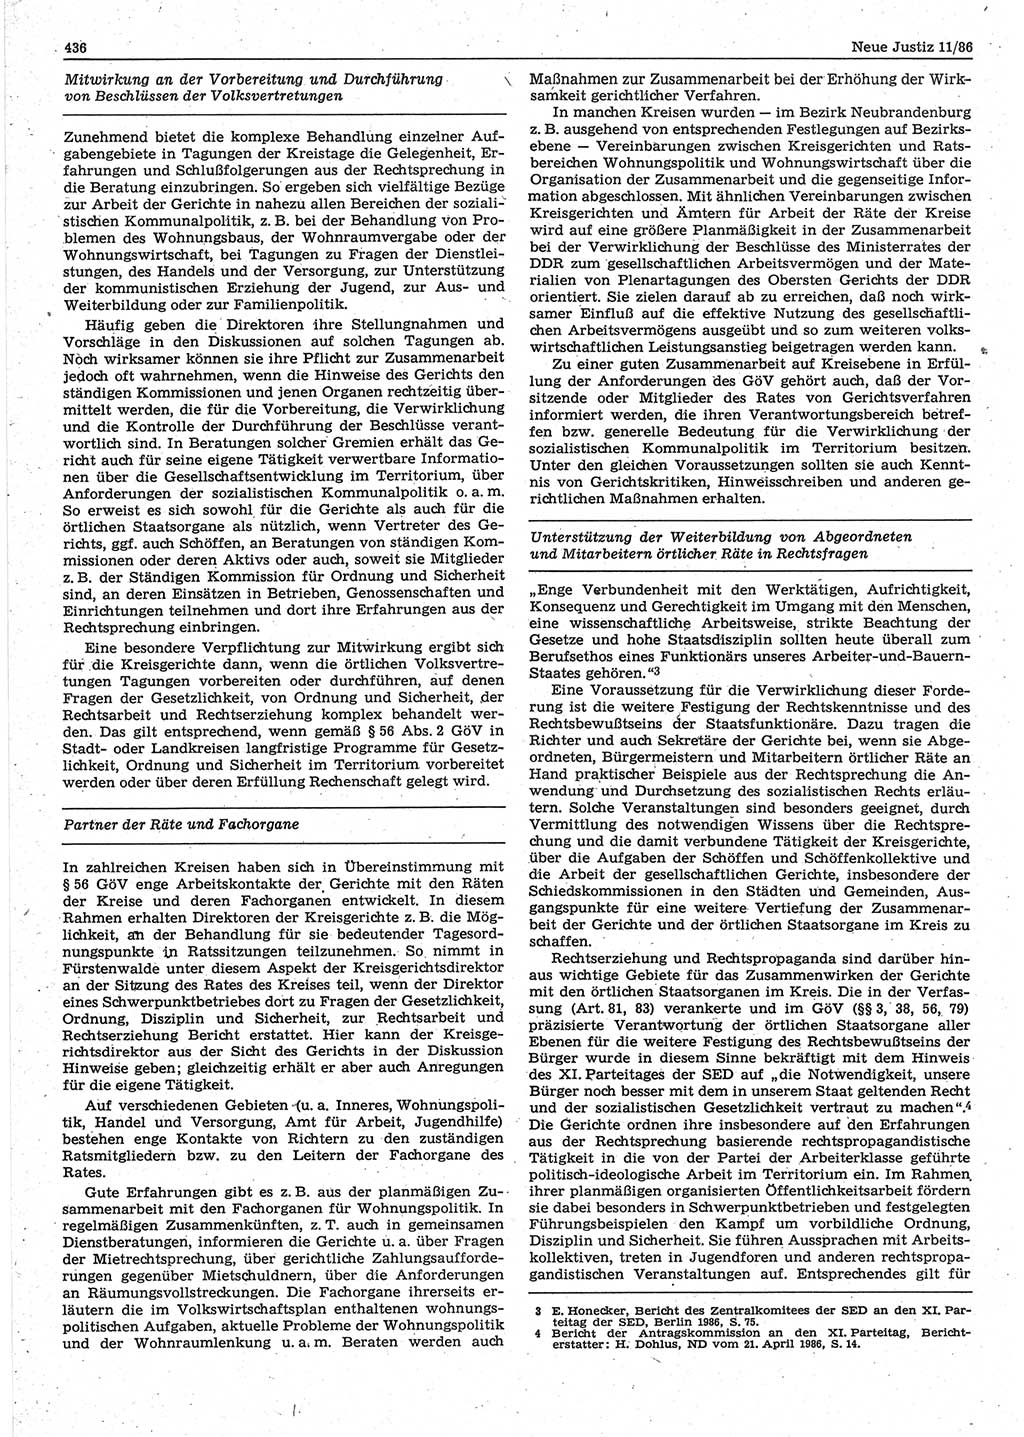 Neue Justiz (NJ), Zeitschrift für sozialistisches Recht und Gesetzlichkeit [Deutsche Demokratische Republik (DDR)], 40. Jahrgang 1986, Seite 436 (NJ DDR 1986, S. 436)